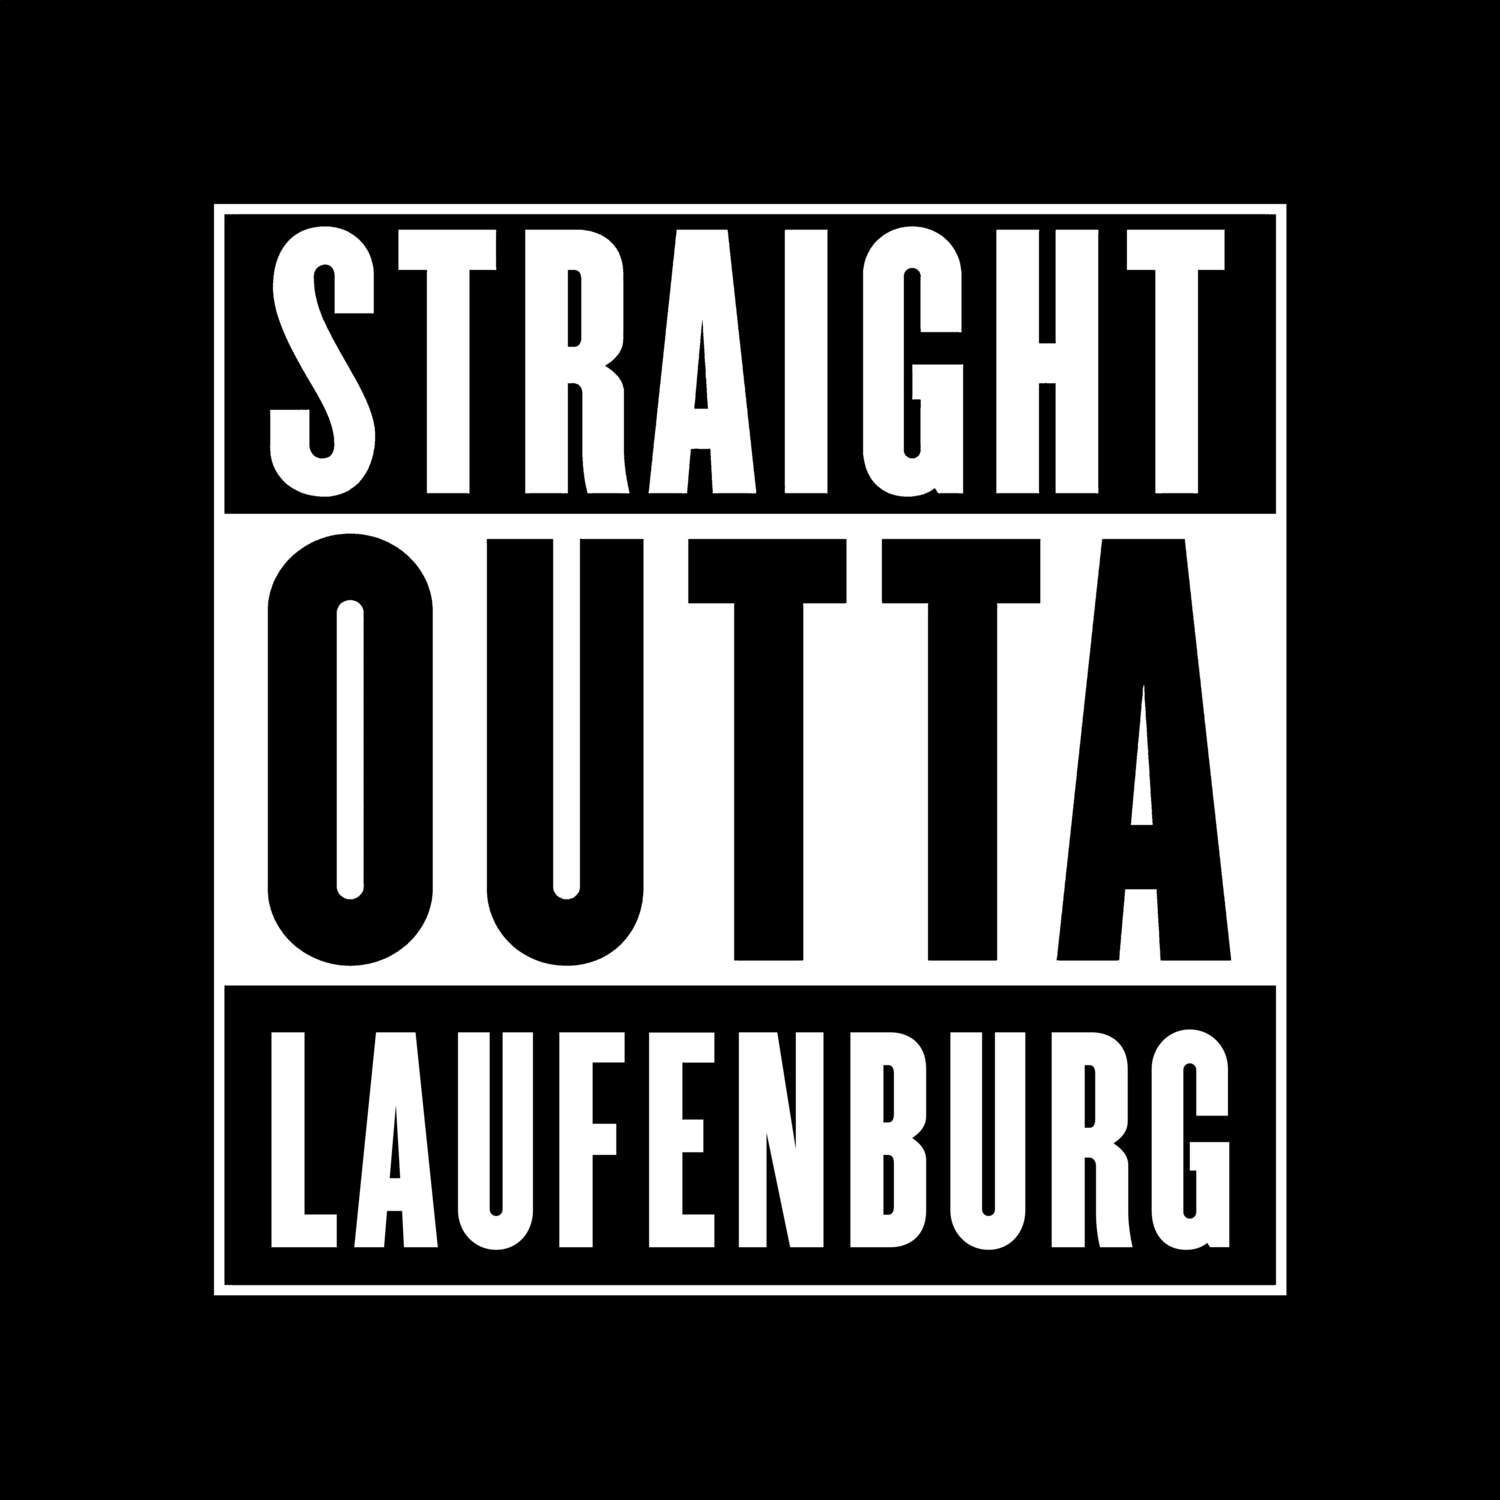 Laufenburg T-Shirt »Straight Outta«